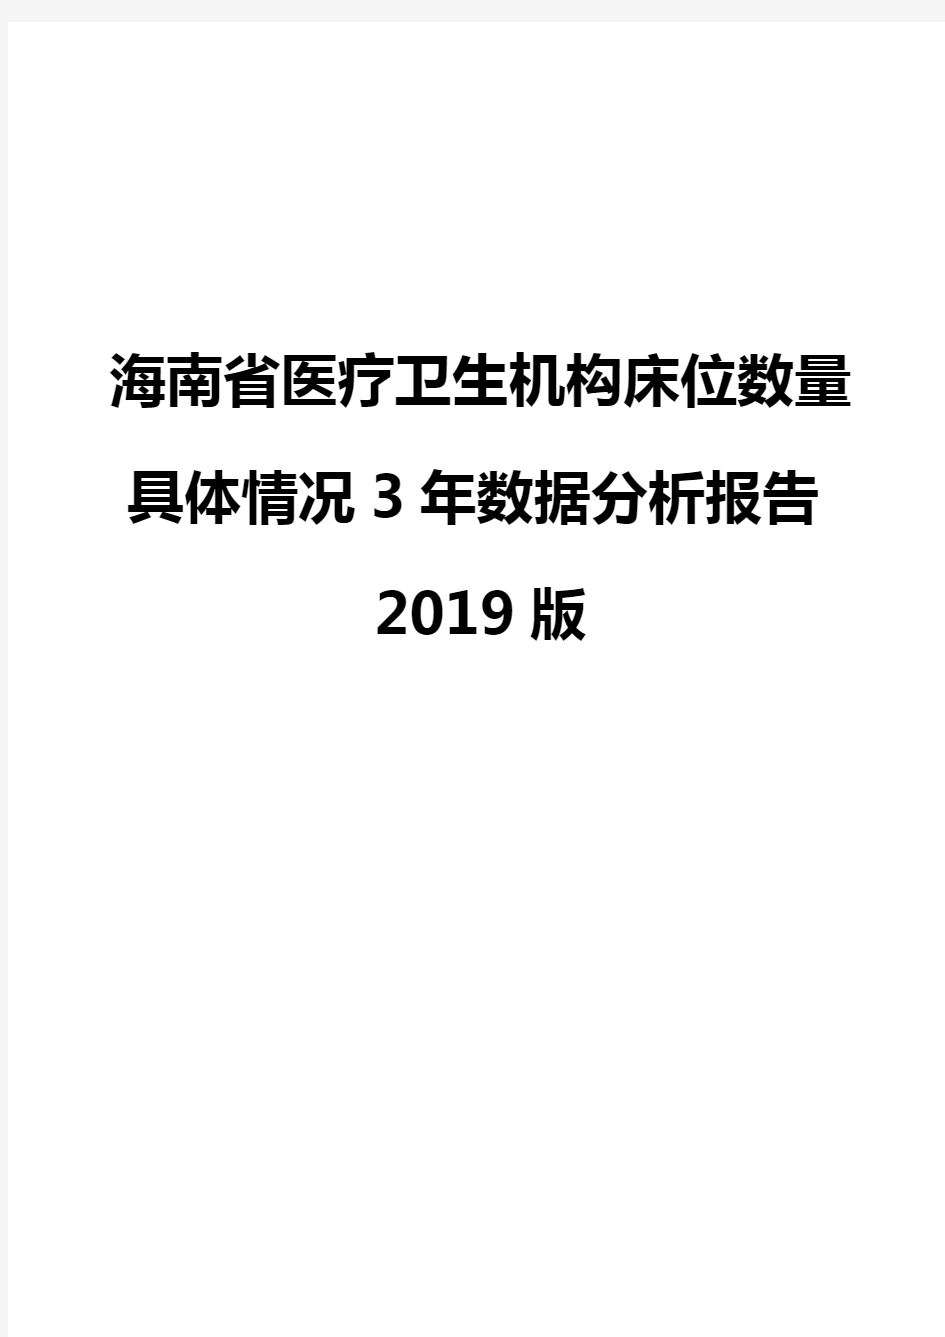 海南省医疗卫生机构床位数量具体情况3年数据分析报告2019版